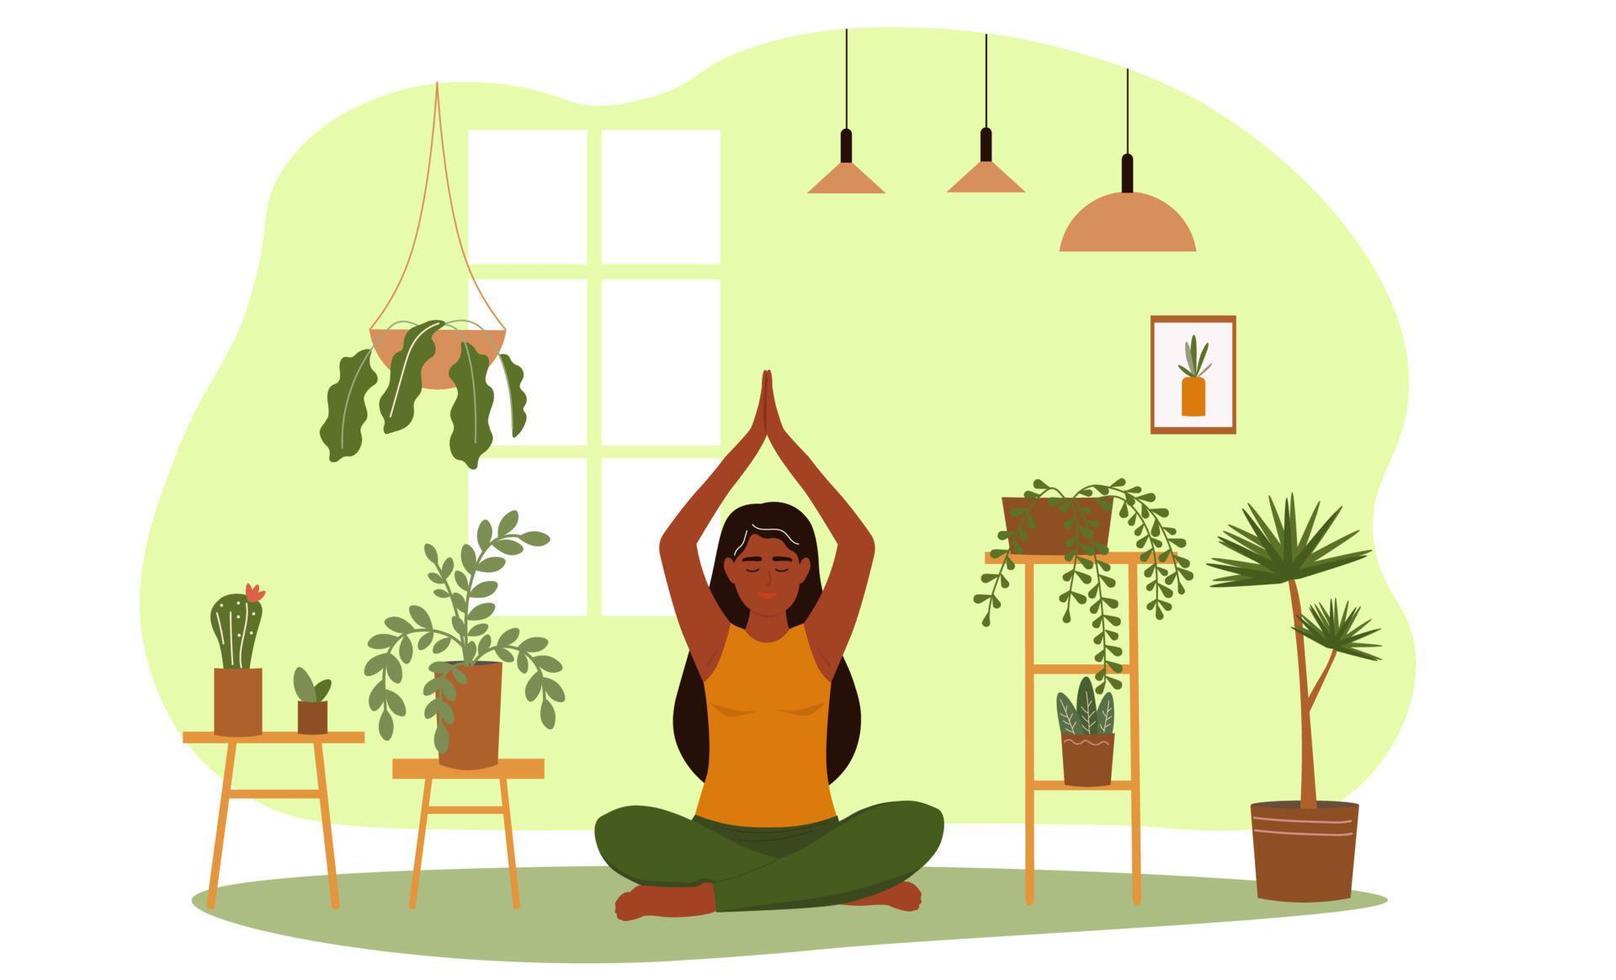 el niña se sienta en un loto posición, levanta su manos arriba encima su cabeza. mujer haciendo asana yoga, Guías un sano estilo de vida entre plantas. vector gráficos.